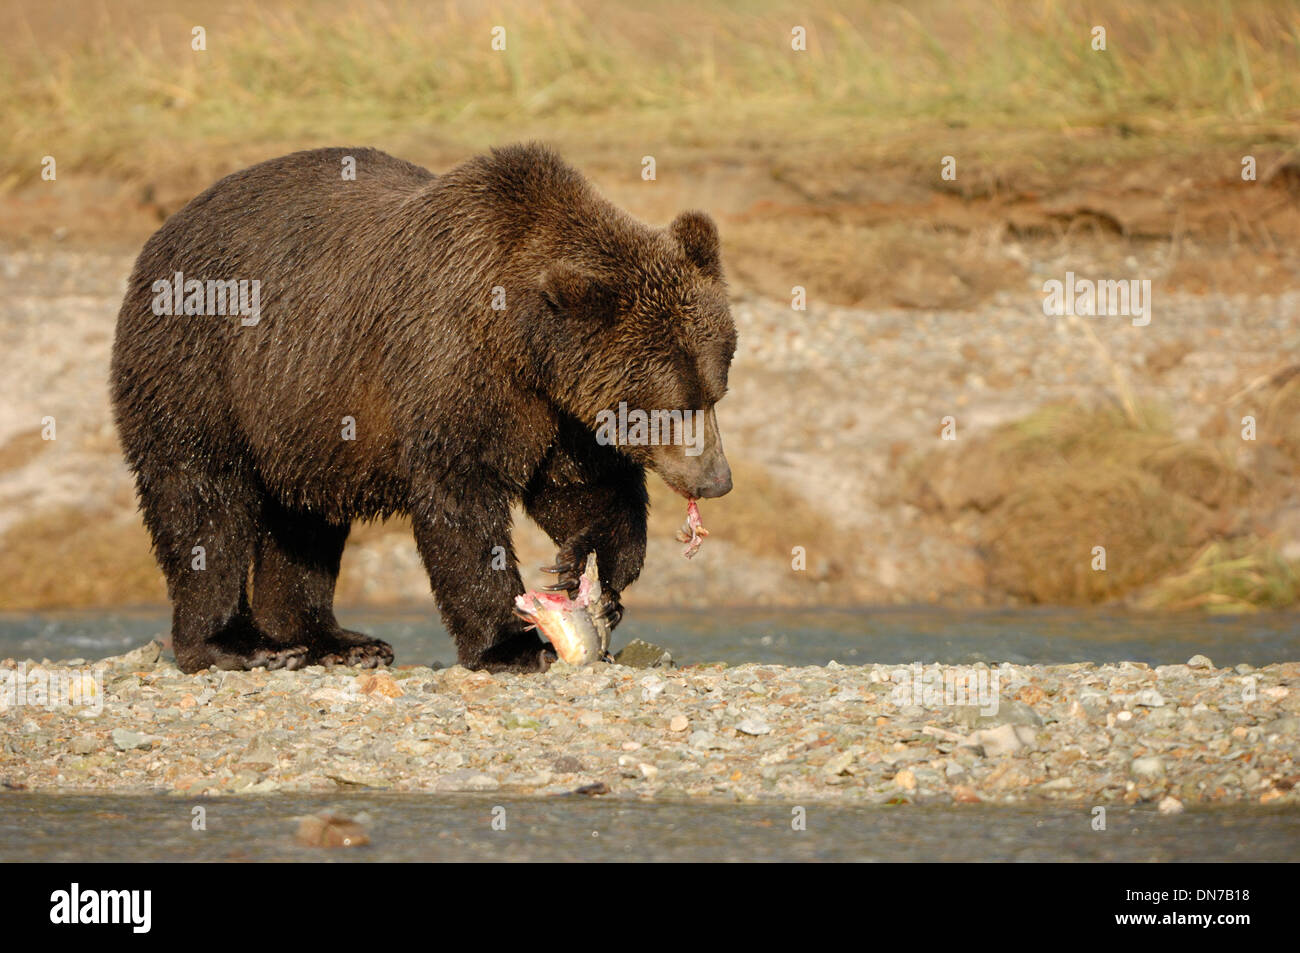 Grizzly bear (Usrsus arctos) eating a caught salmon at river bank, Katmai national park, Alaska, USA. Stock Photo